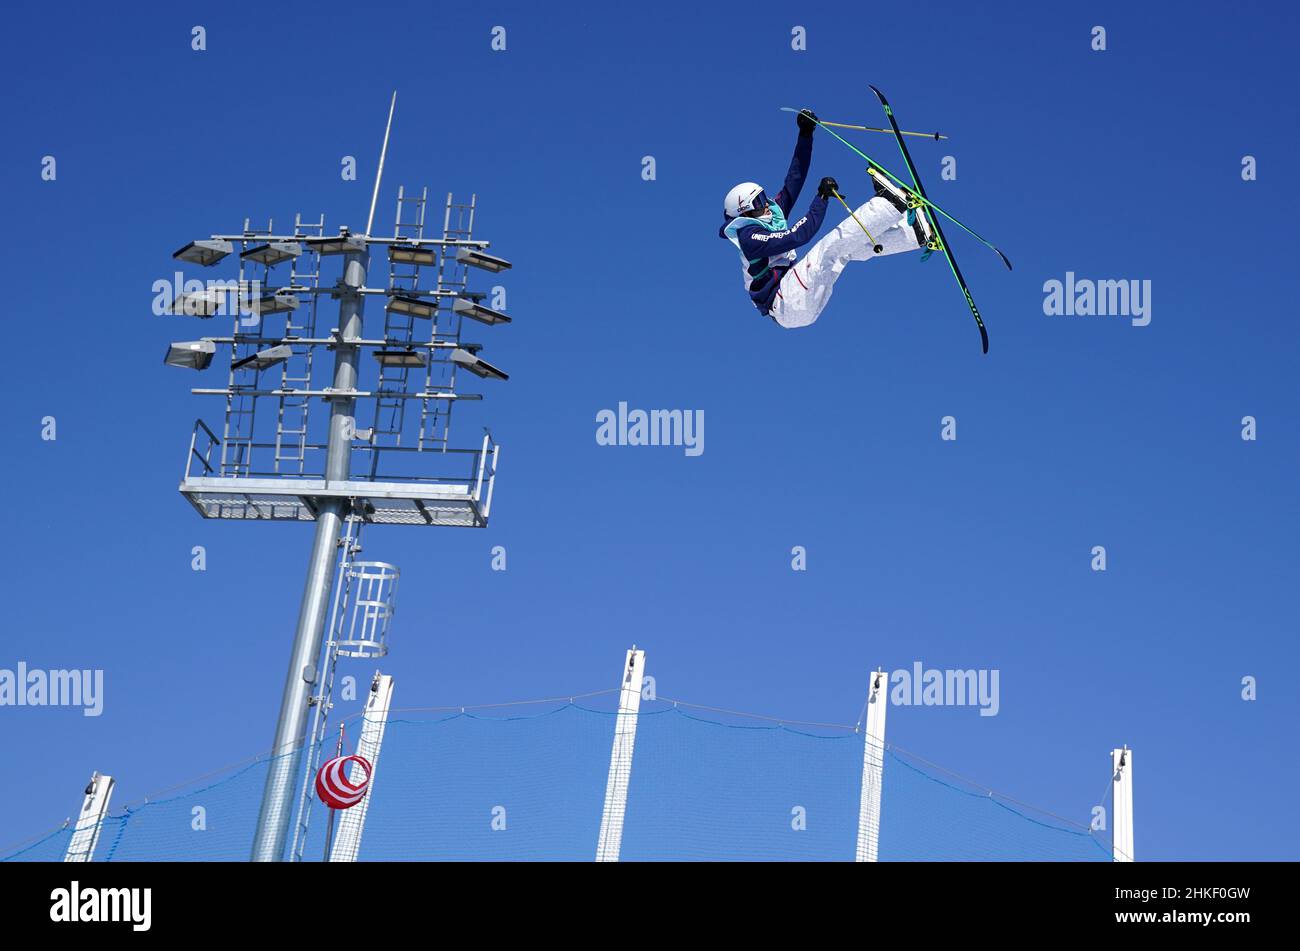 Uno sciatore Freestyle si allena al Genting Snow Park A & M Stadium prima dei Giochi Olimpici invernali di Pechino 2022. Data immagine: Venerdì 4 febbraio 2022. Foto Stock